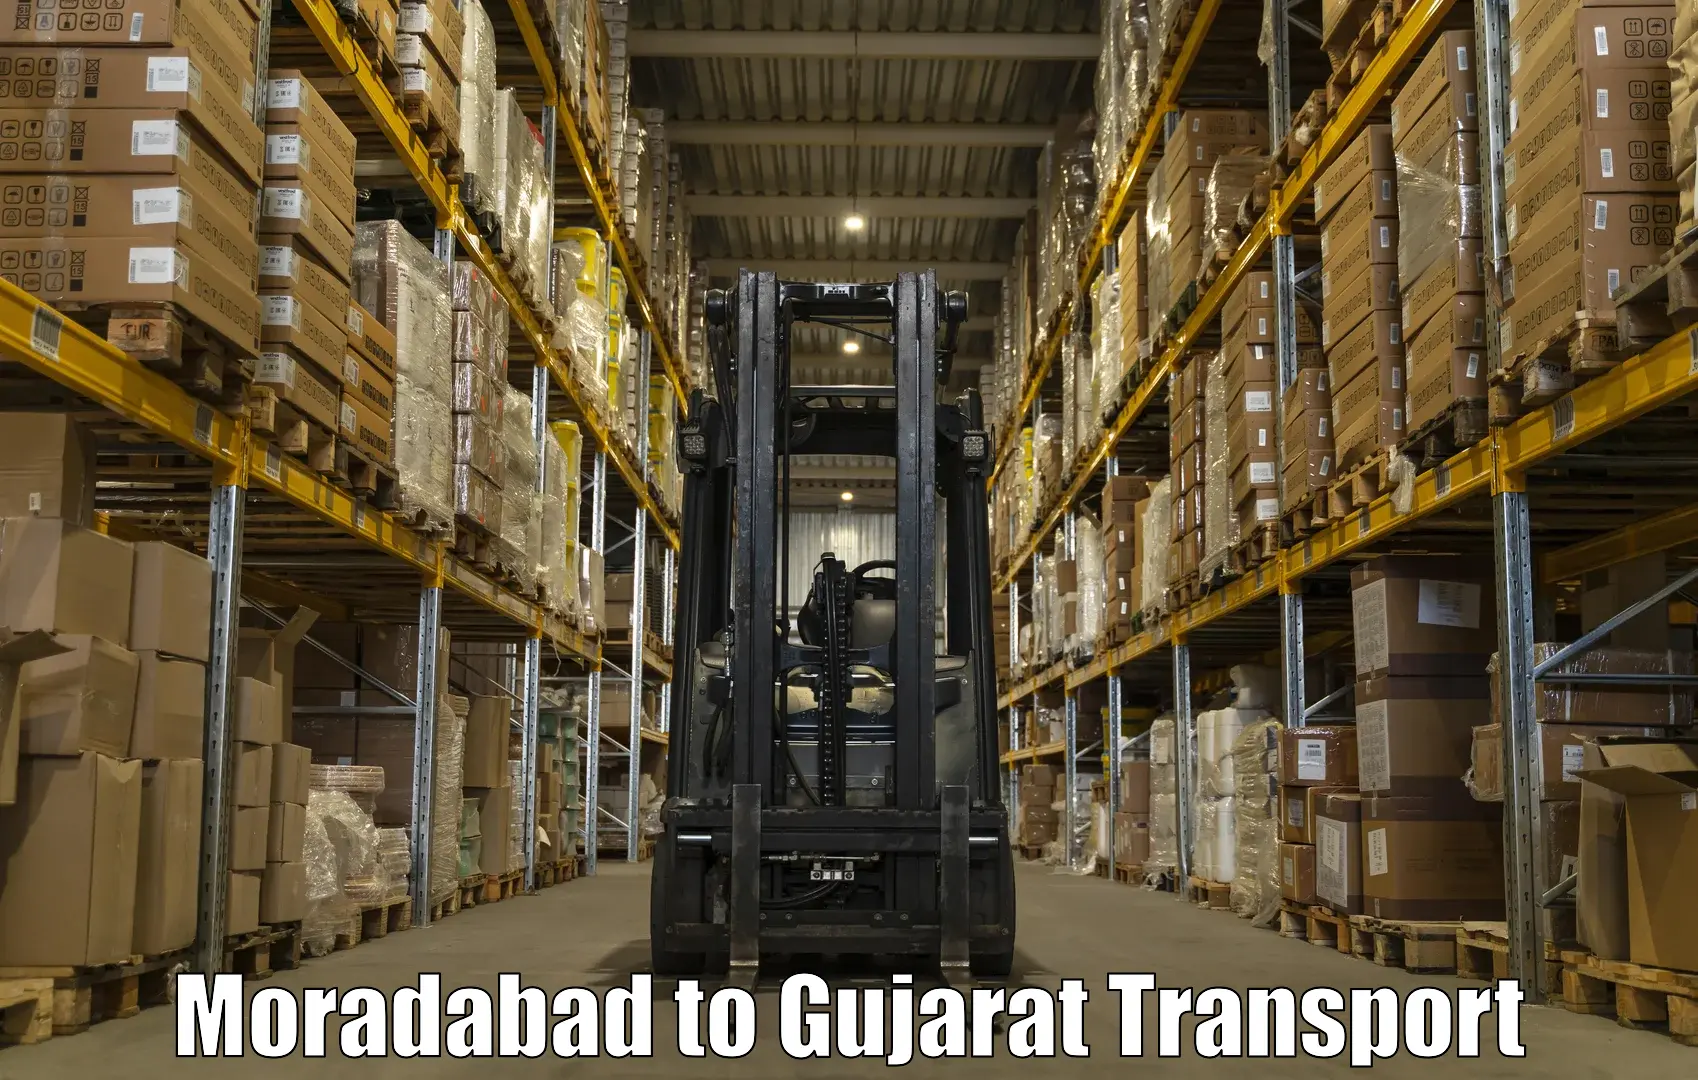 Commercial transport service Moradabad to Khedbrahma